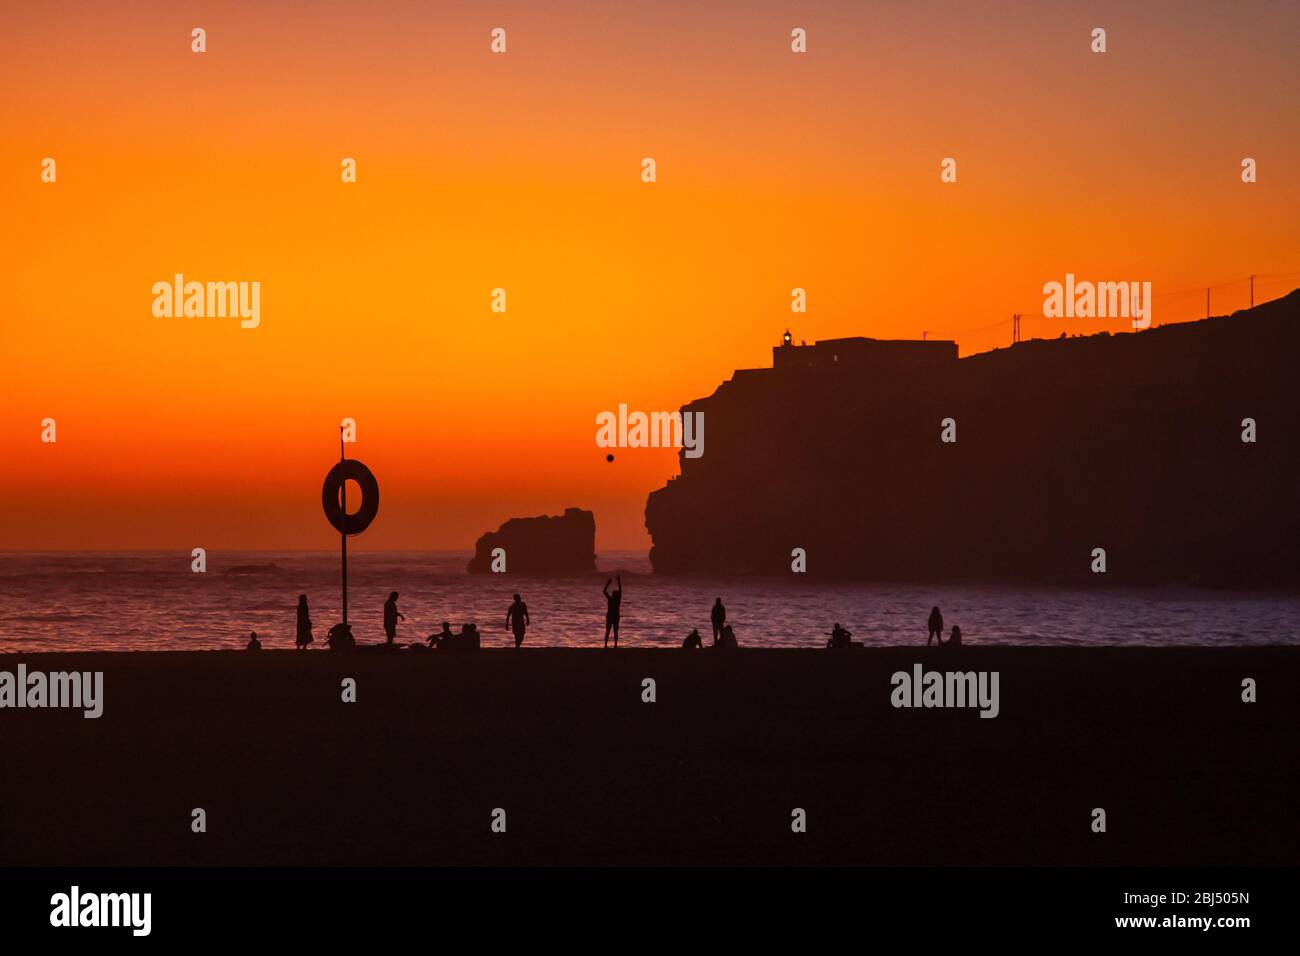 Nazaré, Portugal : magnifique coucher de soleil orange sur l'océan Atlantique et les gens se détendent sur la plage. Phare et fort de Sao Miguel visibles sur la haute Banque D'Images